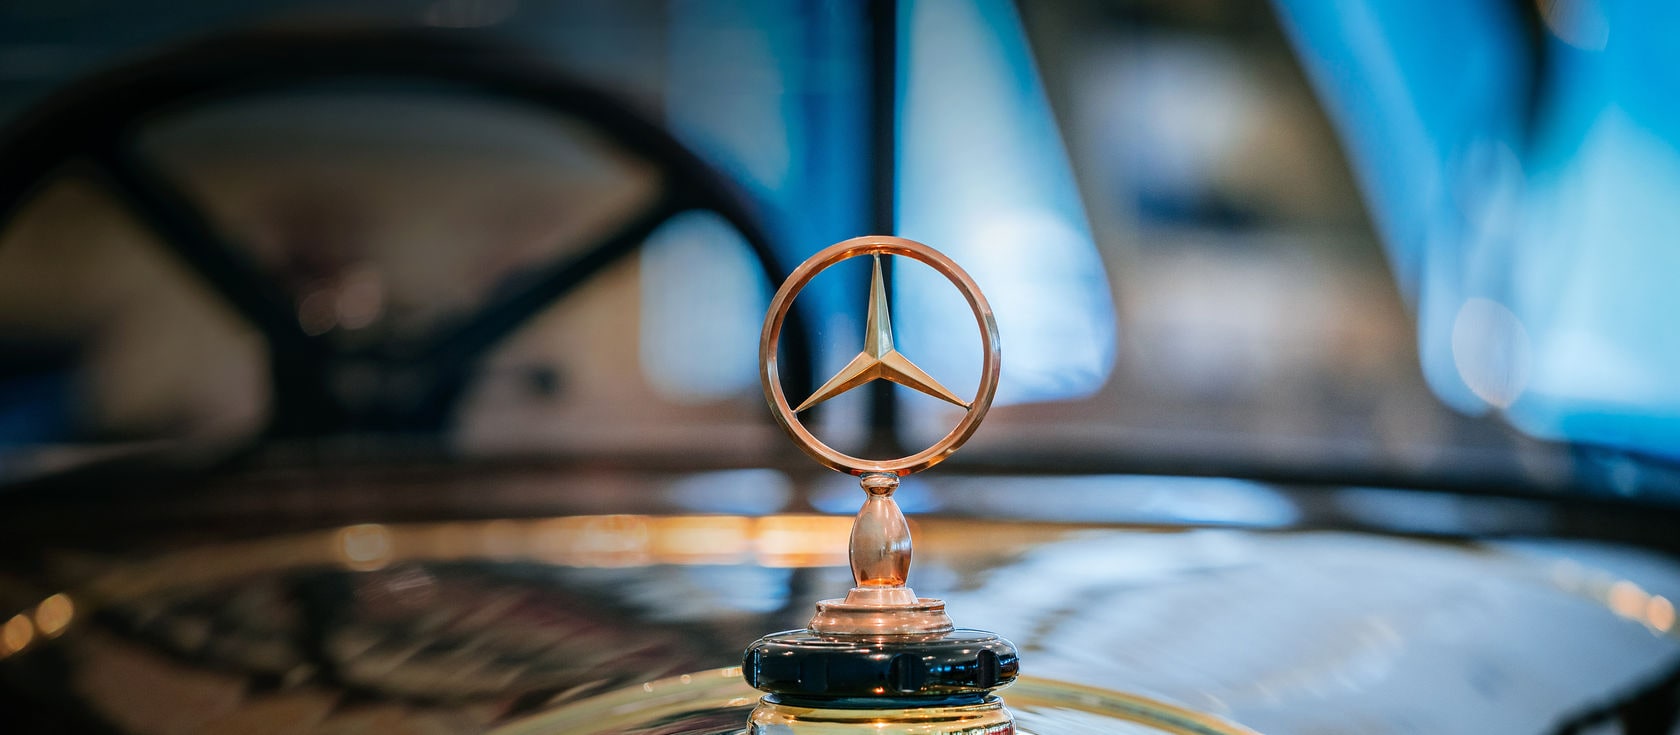 Der Mercedes-Stern: Seit 100 Jahren in der Umlaufbahn.